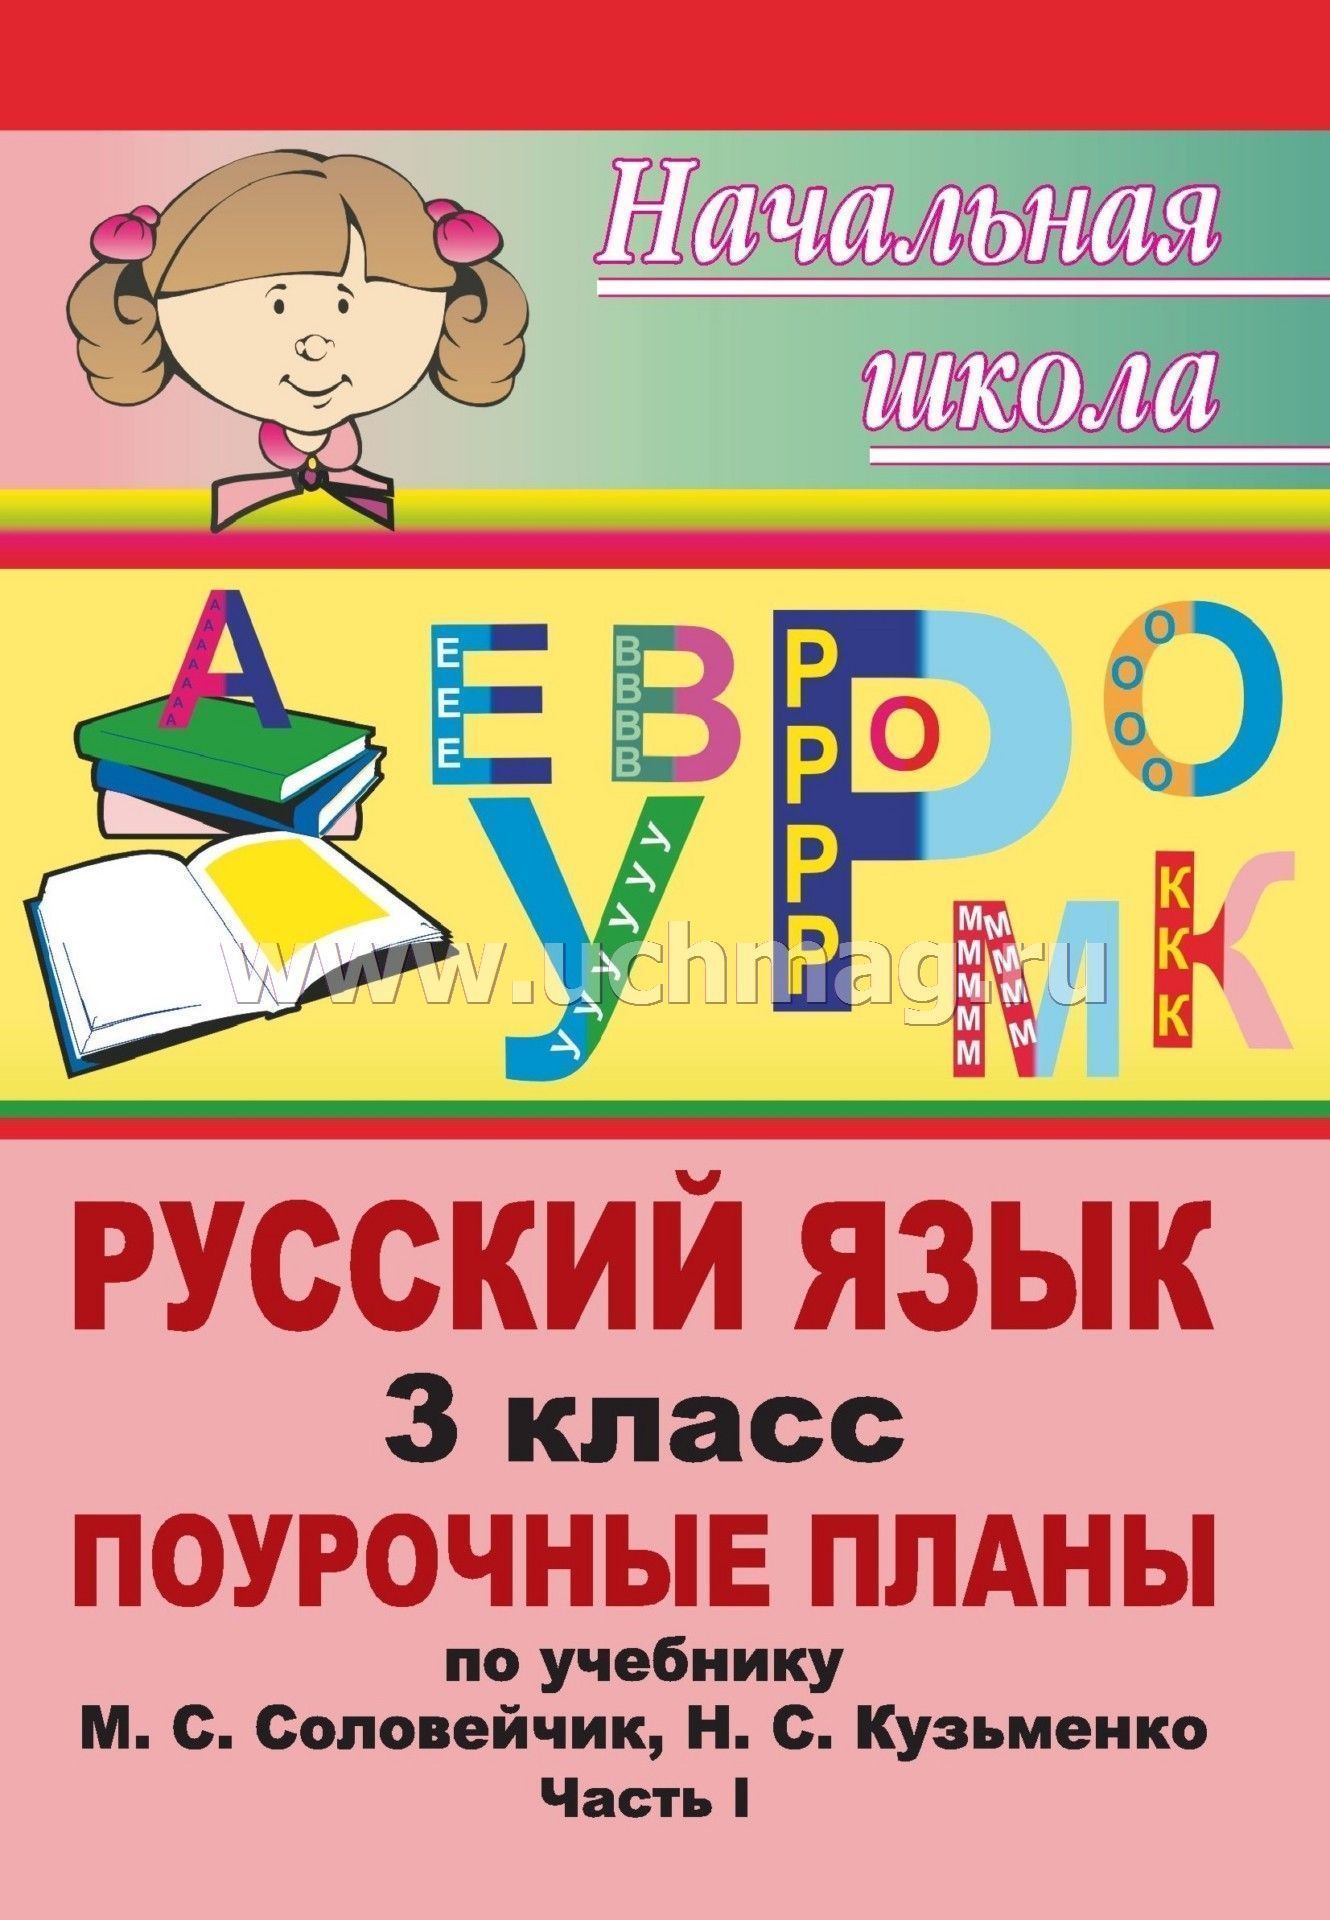 Методичка поурочное планирование уроков в 1 классе русский язык соловейчик